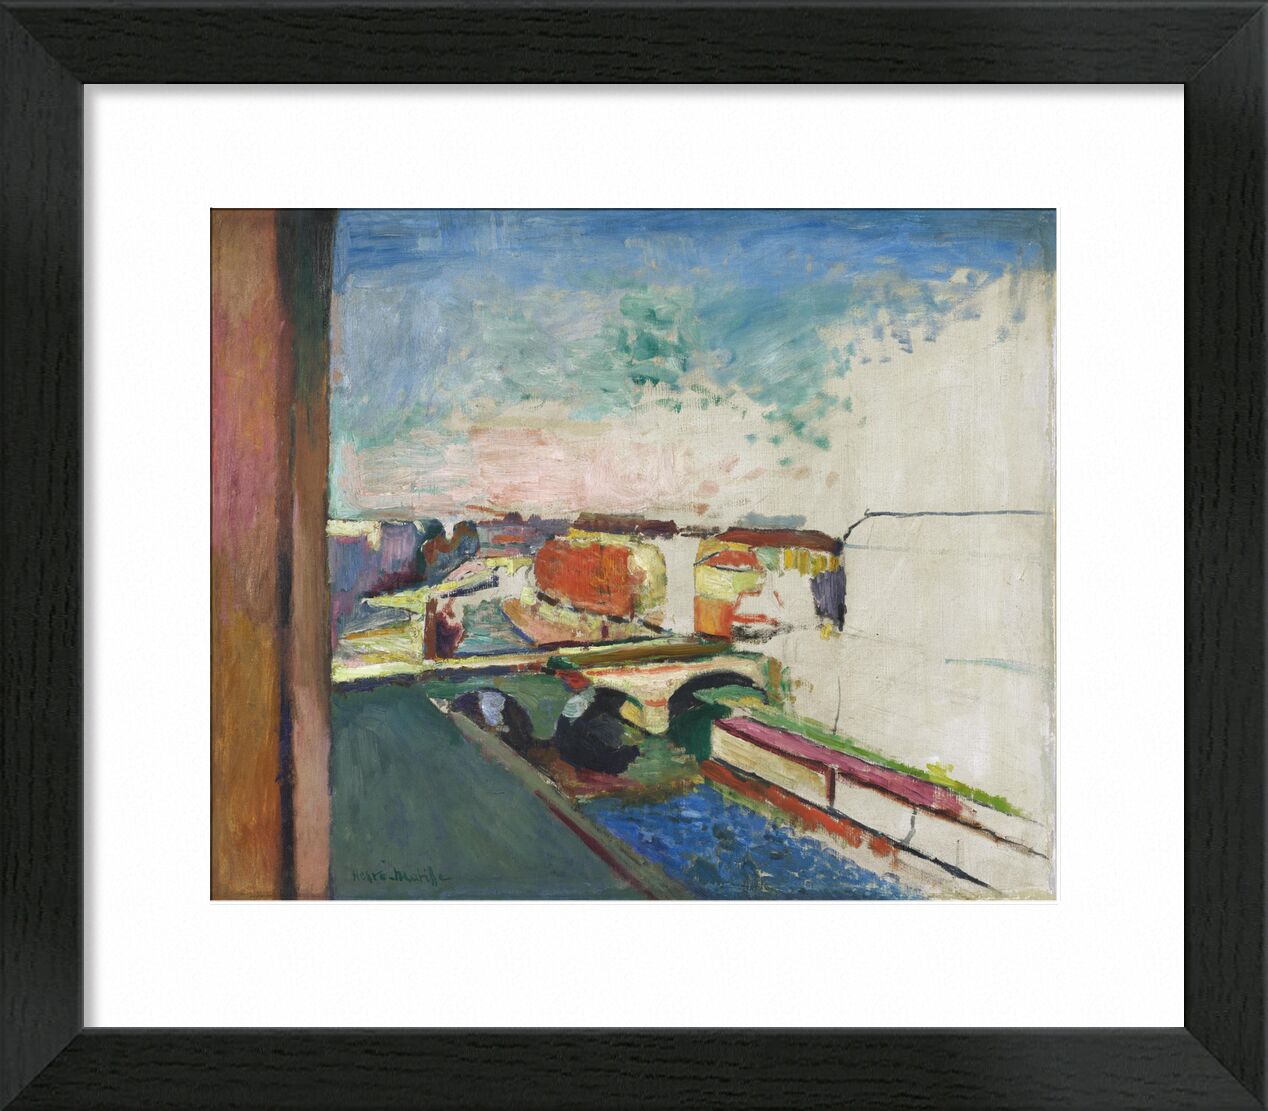 Pont Saint-Michel - Matisse von Bildende Kunst, Prodi Art, Paris, Frankreich, pont, Henri Matisse, Matisse